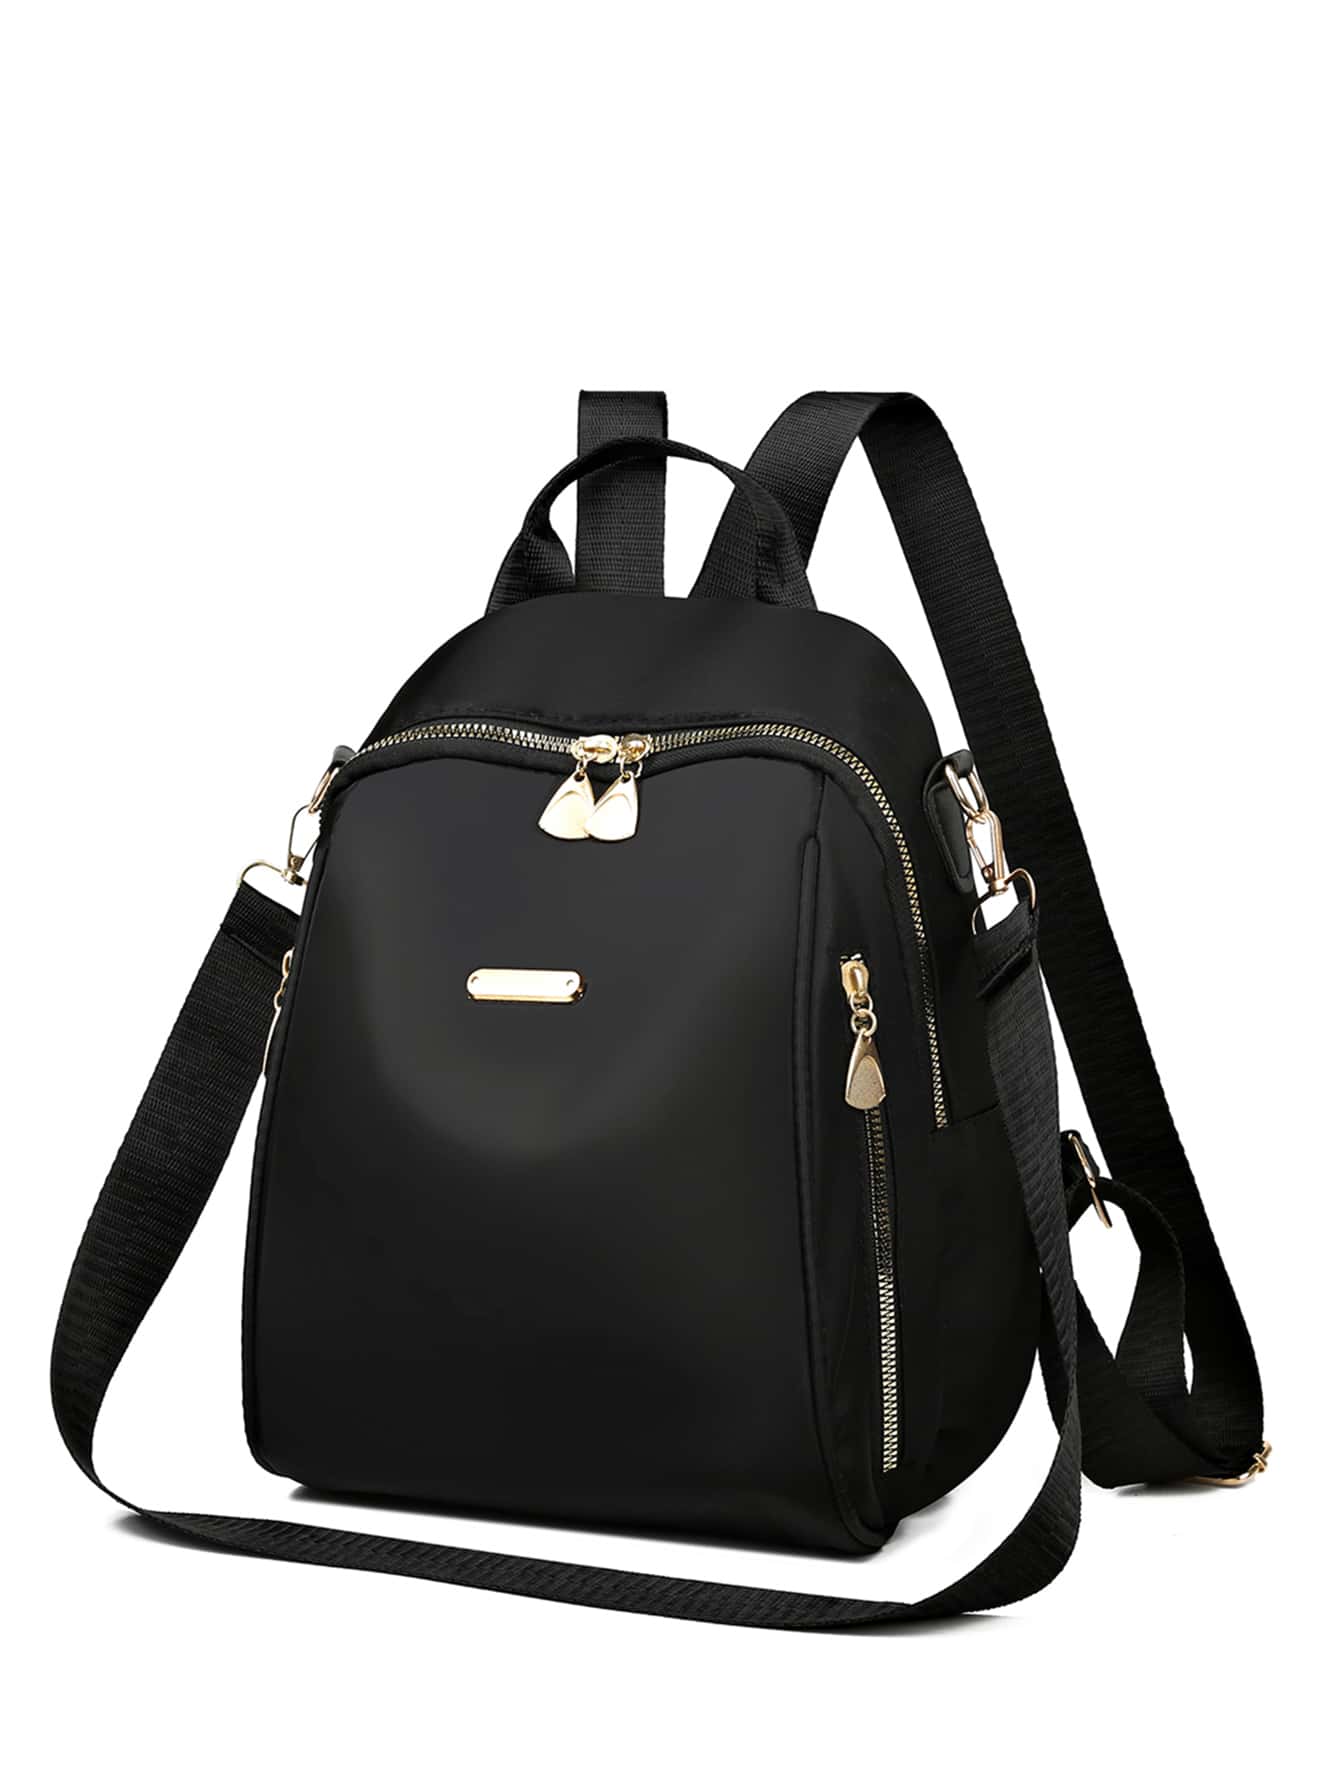 Классический рюкзак с металлическим декором на молнии Черный Модные, черный 14 дюймовый водонепроницаемый мужской рюкзак на молнии с декором узлом черный